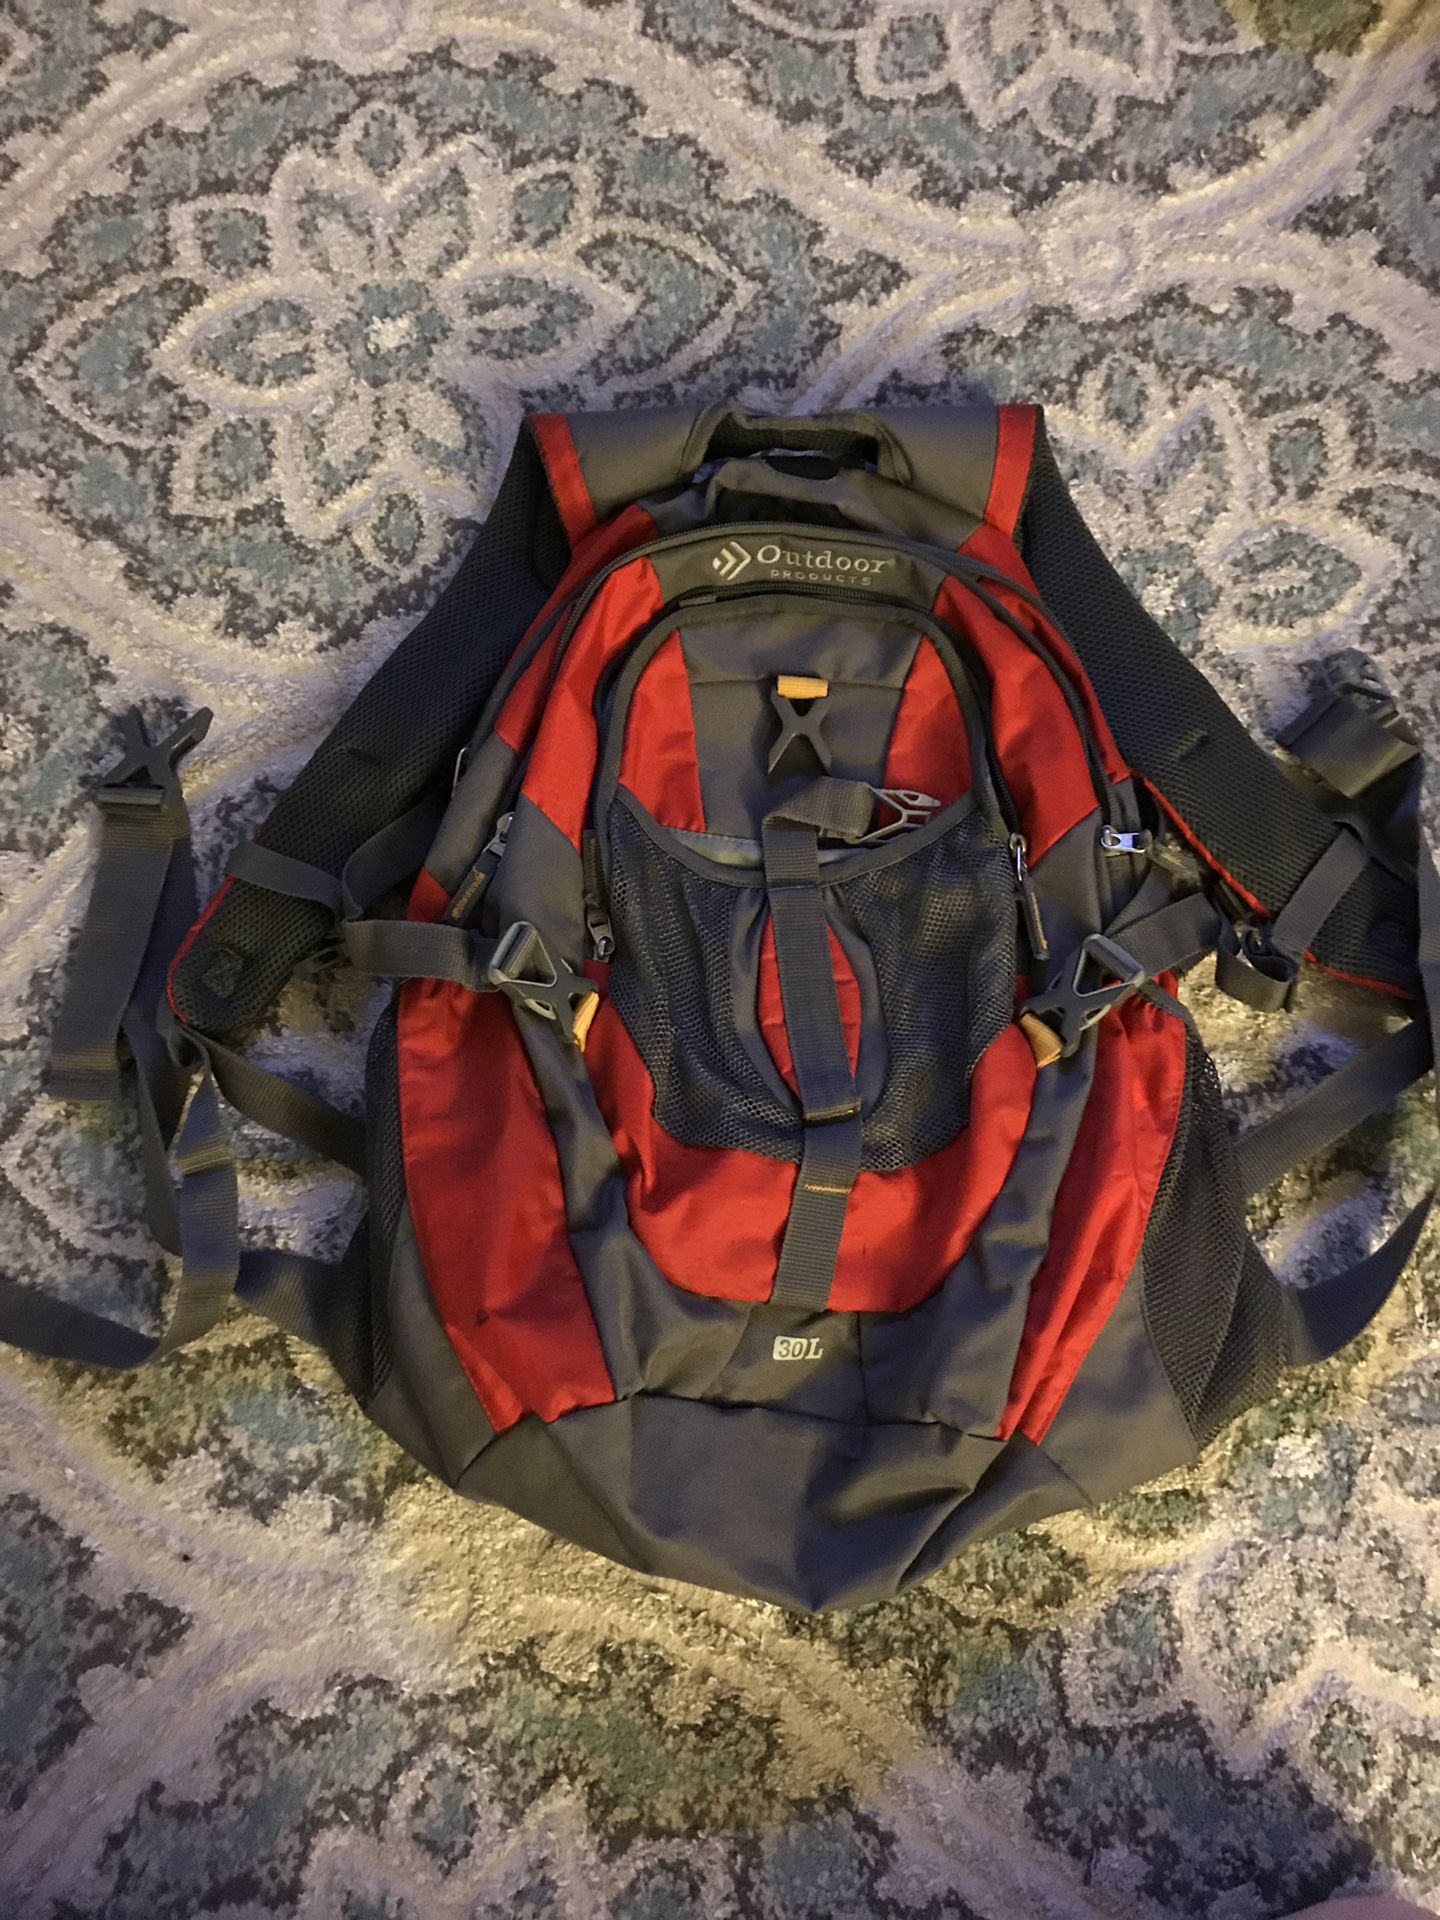 30L hiking backpack